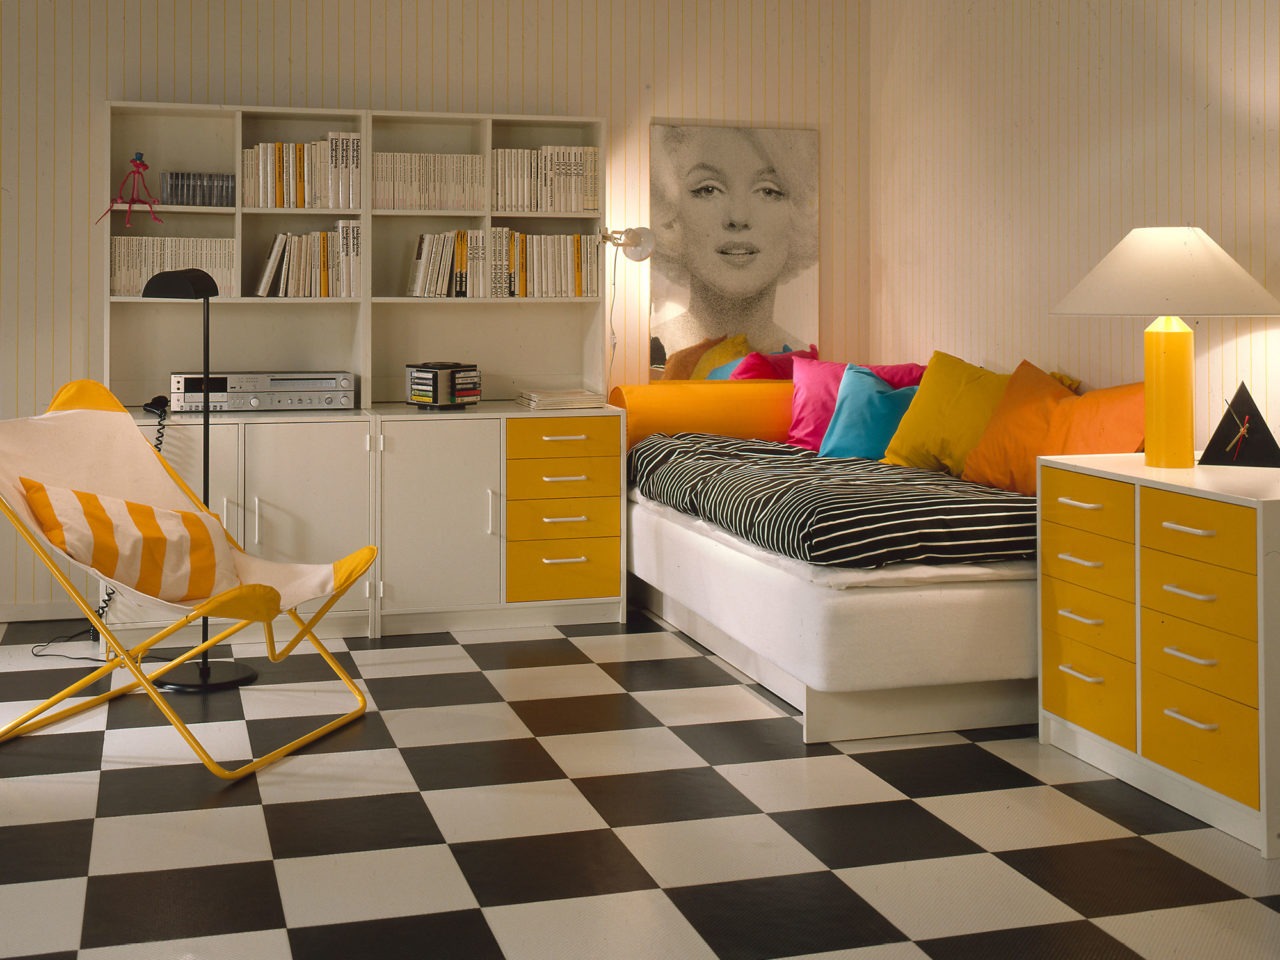 Habitación con suelo a cuadros, pared a rayas amarillas y blancas y muebles BOJ en blanco con detalles amarillos.